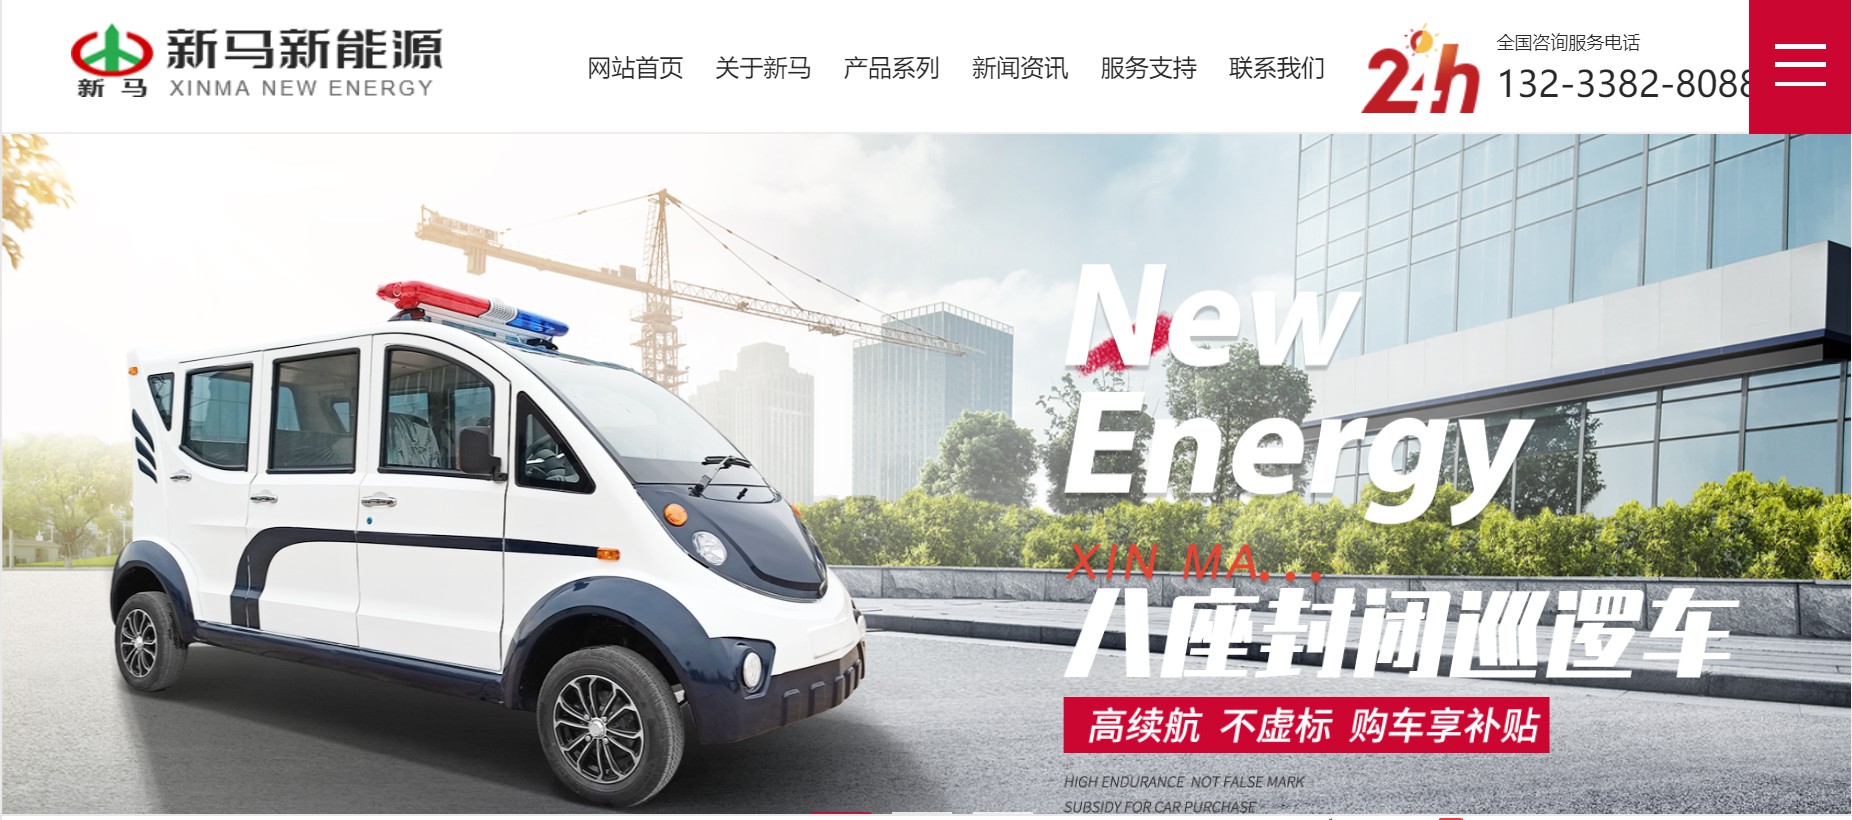 恭贺 “河南新马新能源电动车有限公司” 官网正式上线！